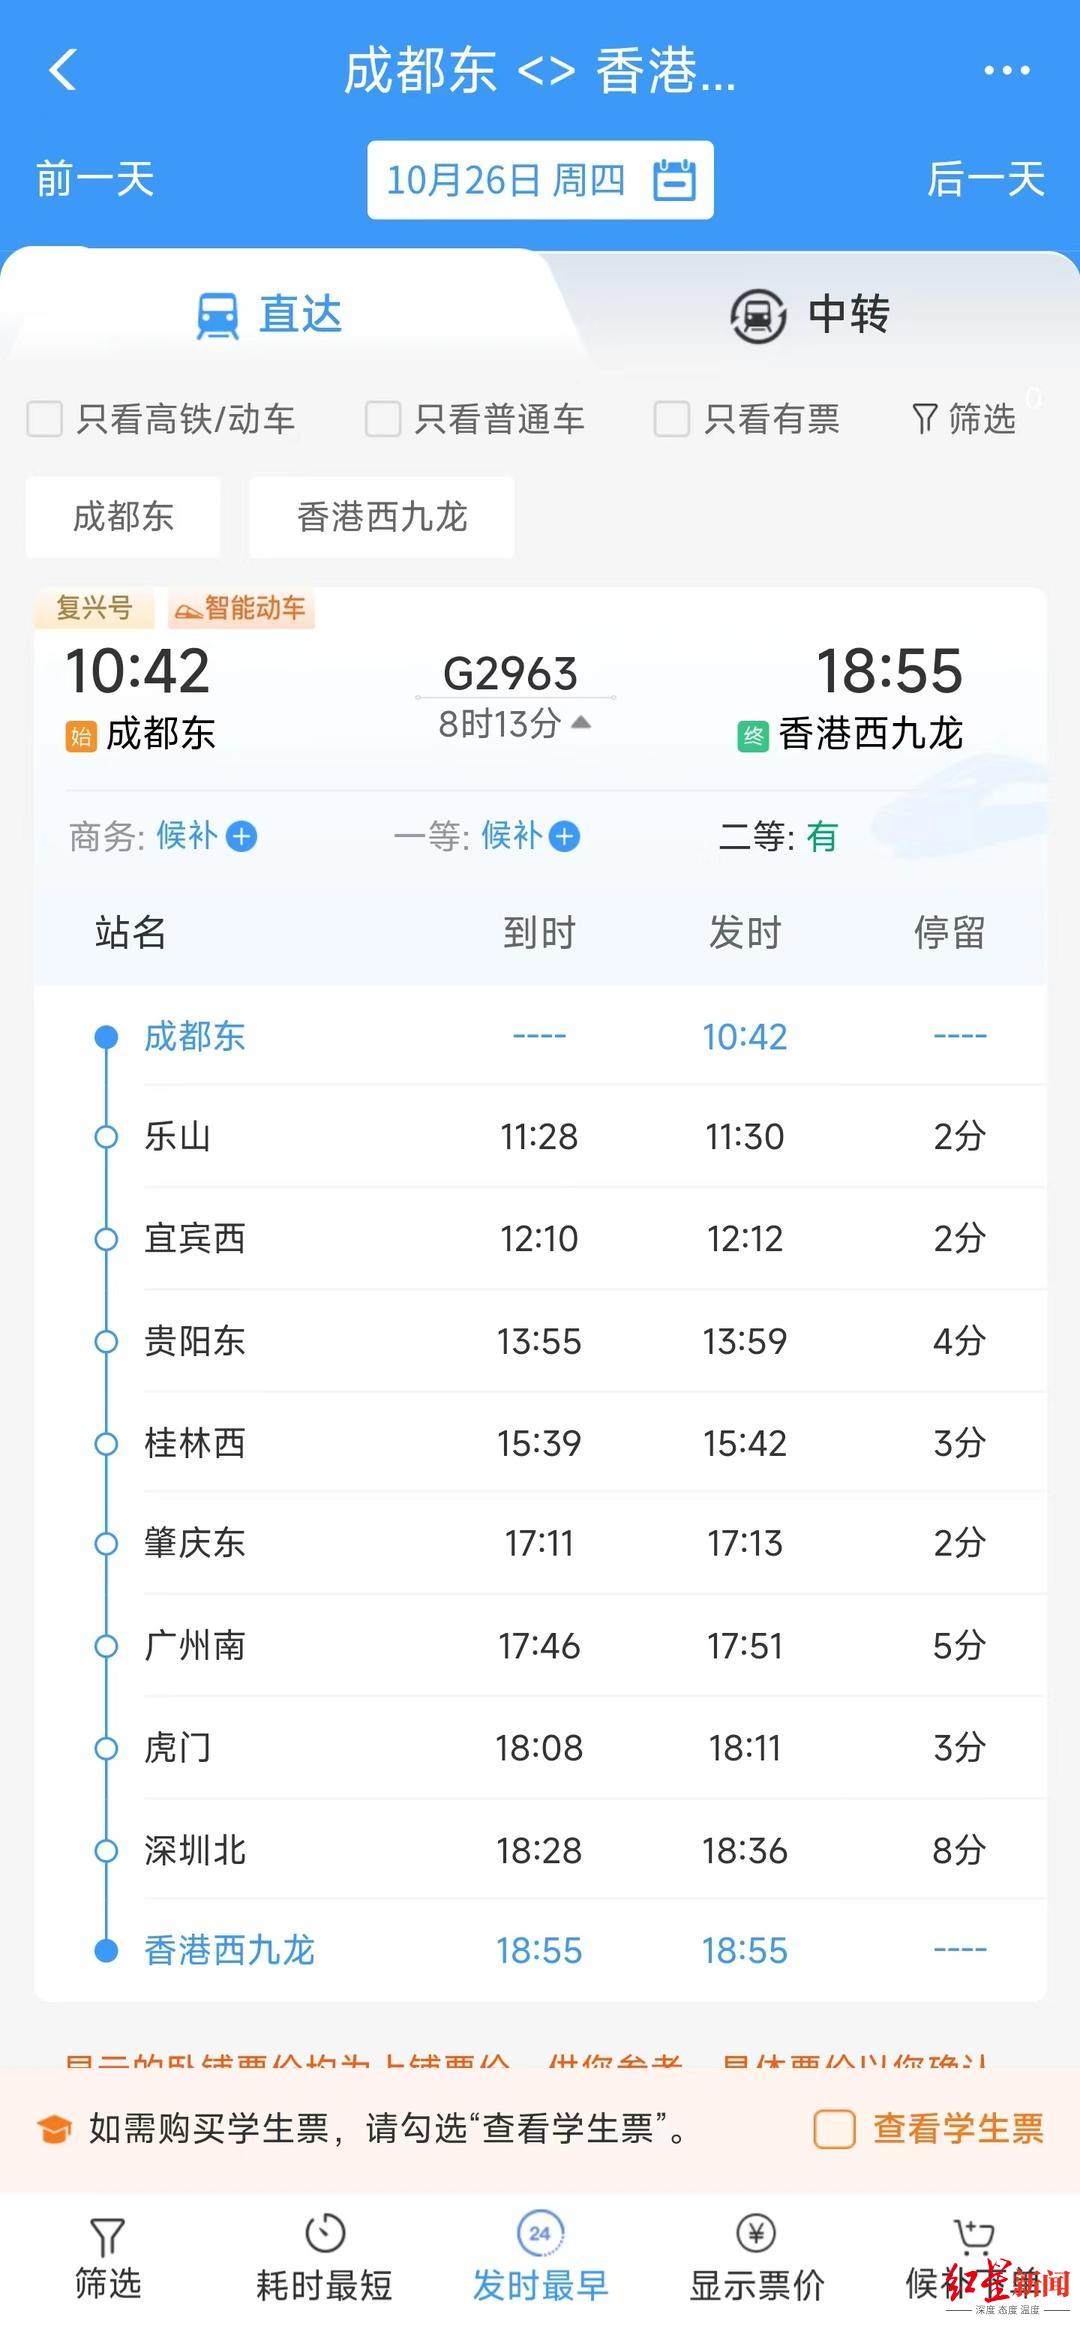 ▲10月26日，蓉港高铁上线运行复兴号智能动车组列车